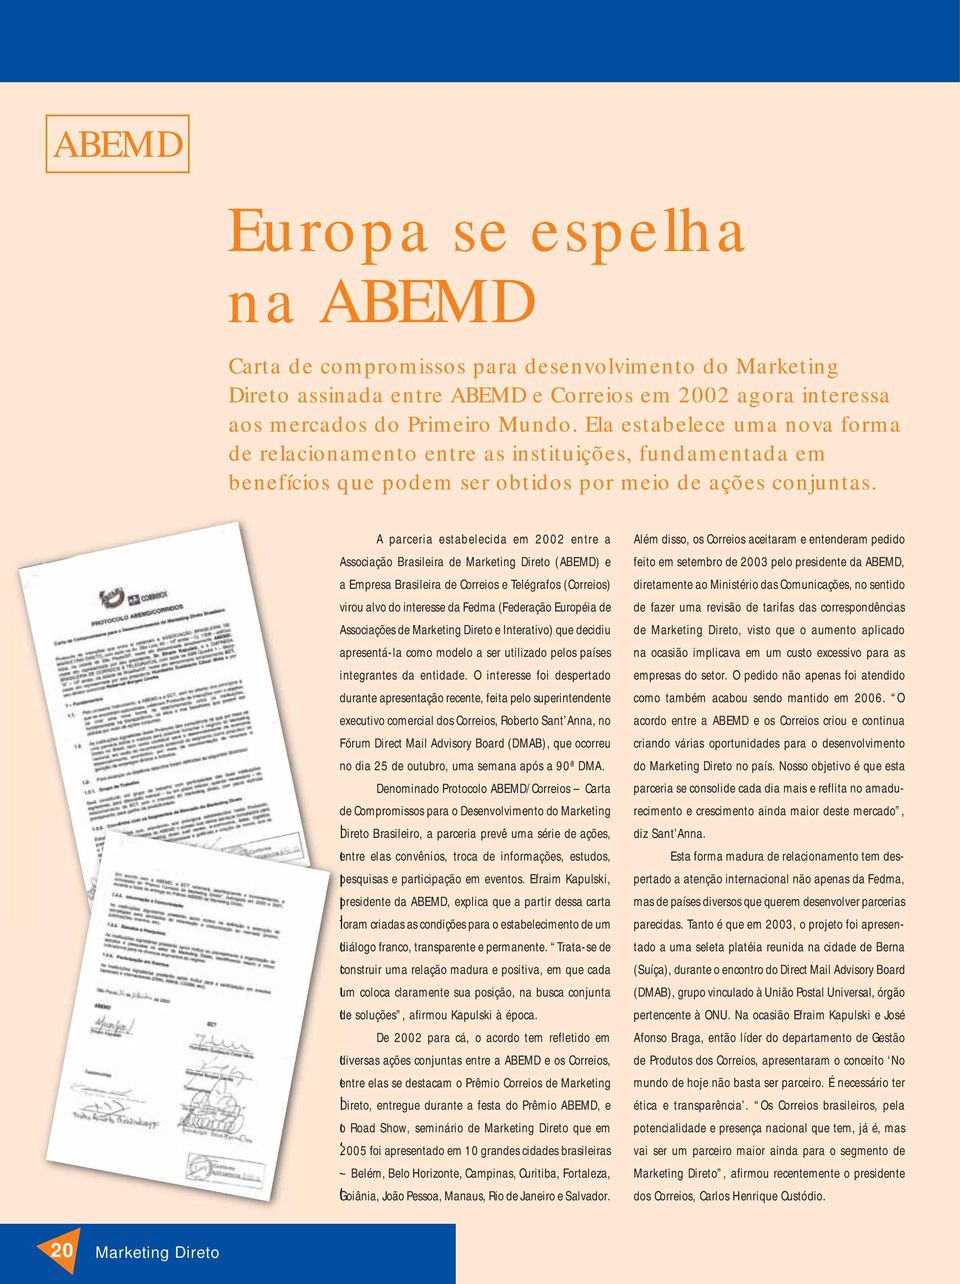 A parceria estabelecida em 2002 entre a Associação Brasileira de Marketing Direto (ABEMD) e a Empresa Brasileira de Correios e Telégrafos (Correios) virou alvo do interesse da Fedma (Federação